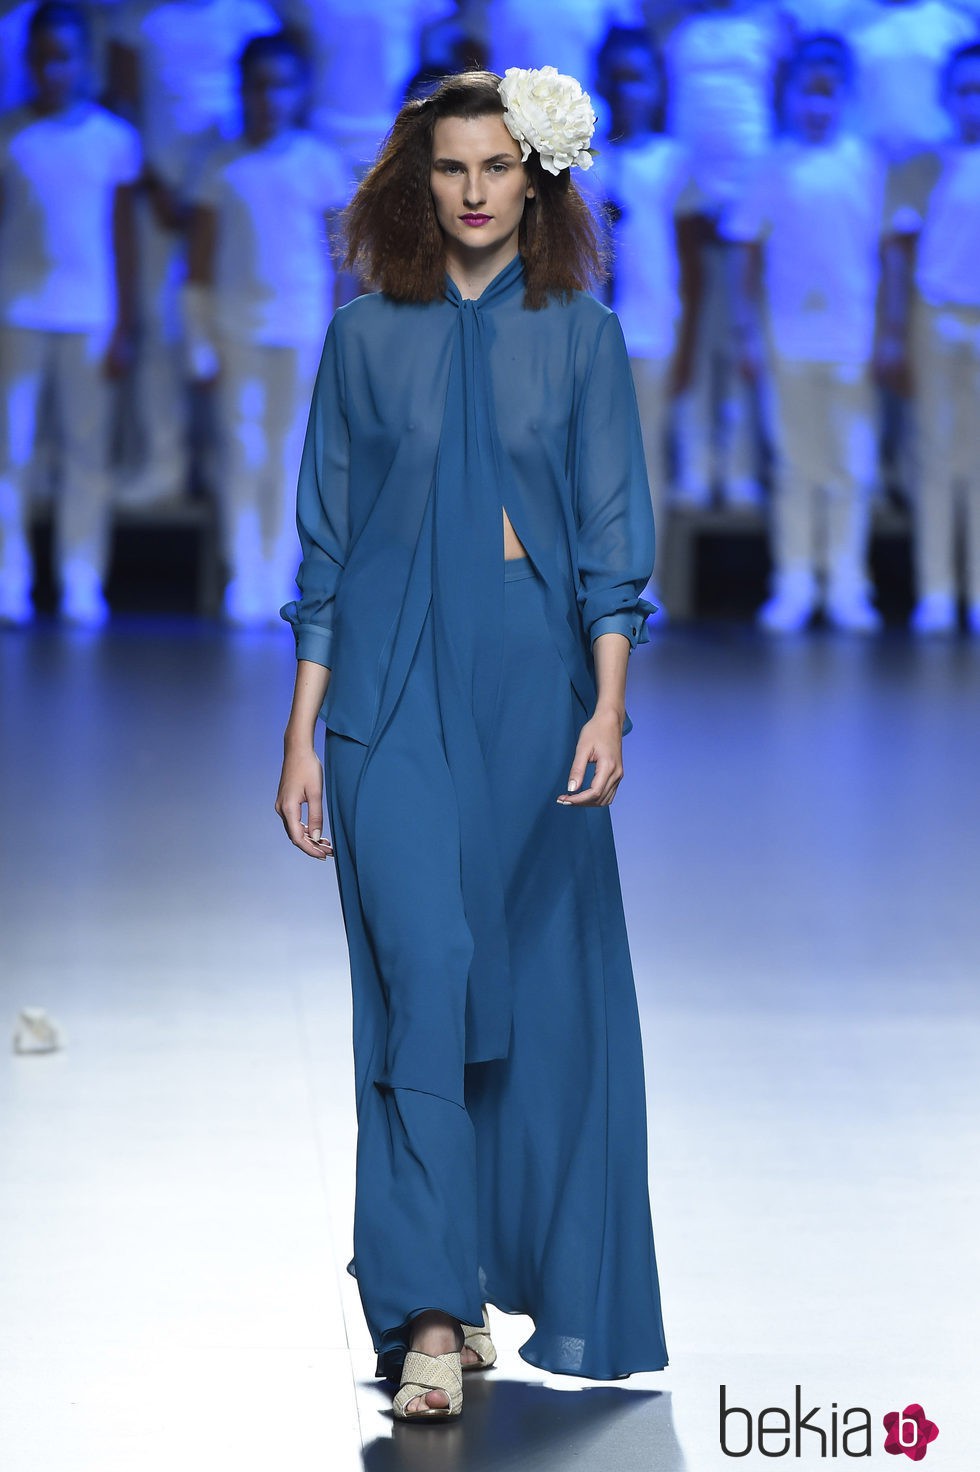 Vestido azul dos piezas de Duyos para primavera/verano 2015 en Madrid Fashion Week